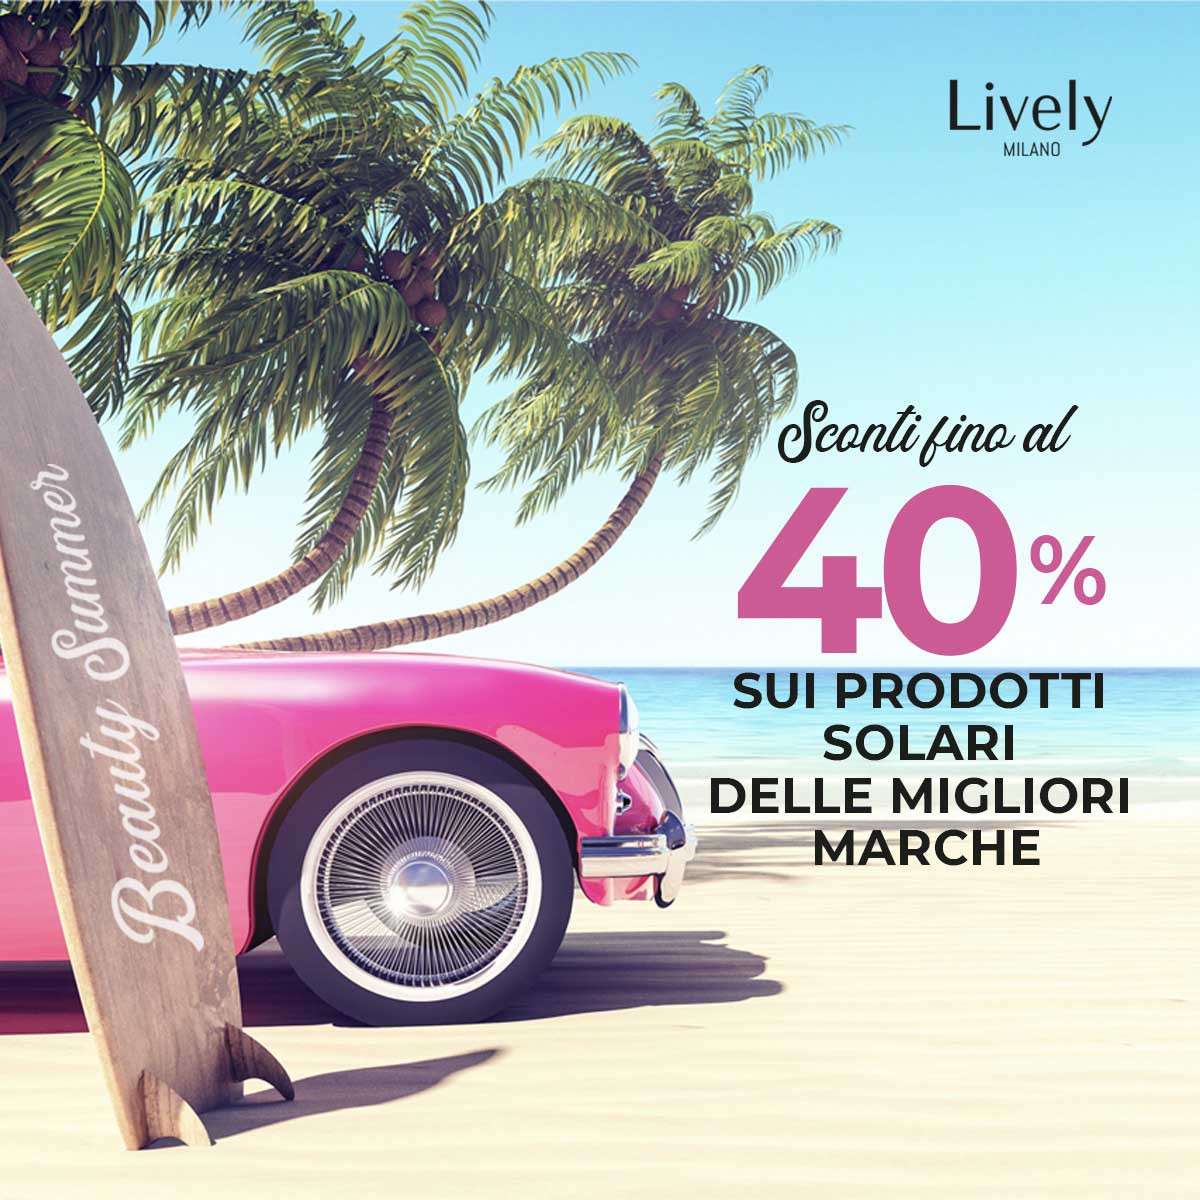 promo Lively estate: 40% sui prodotti solari